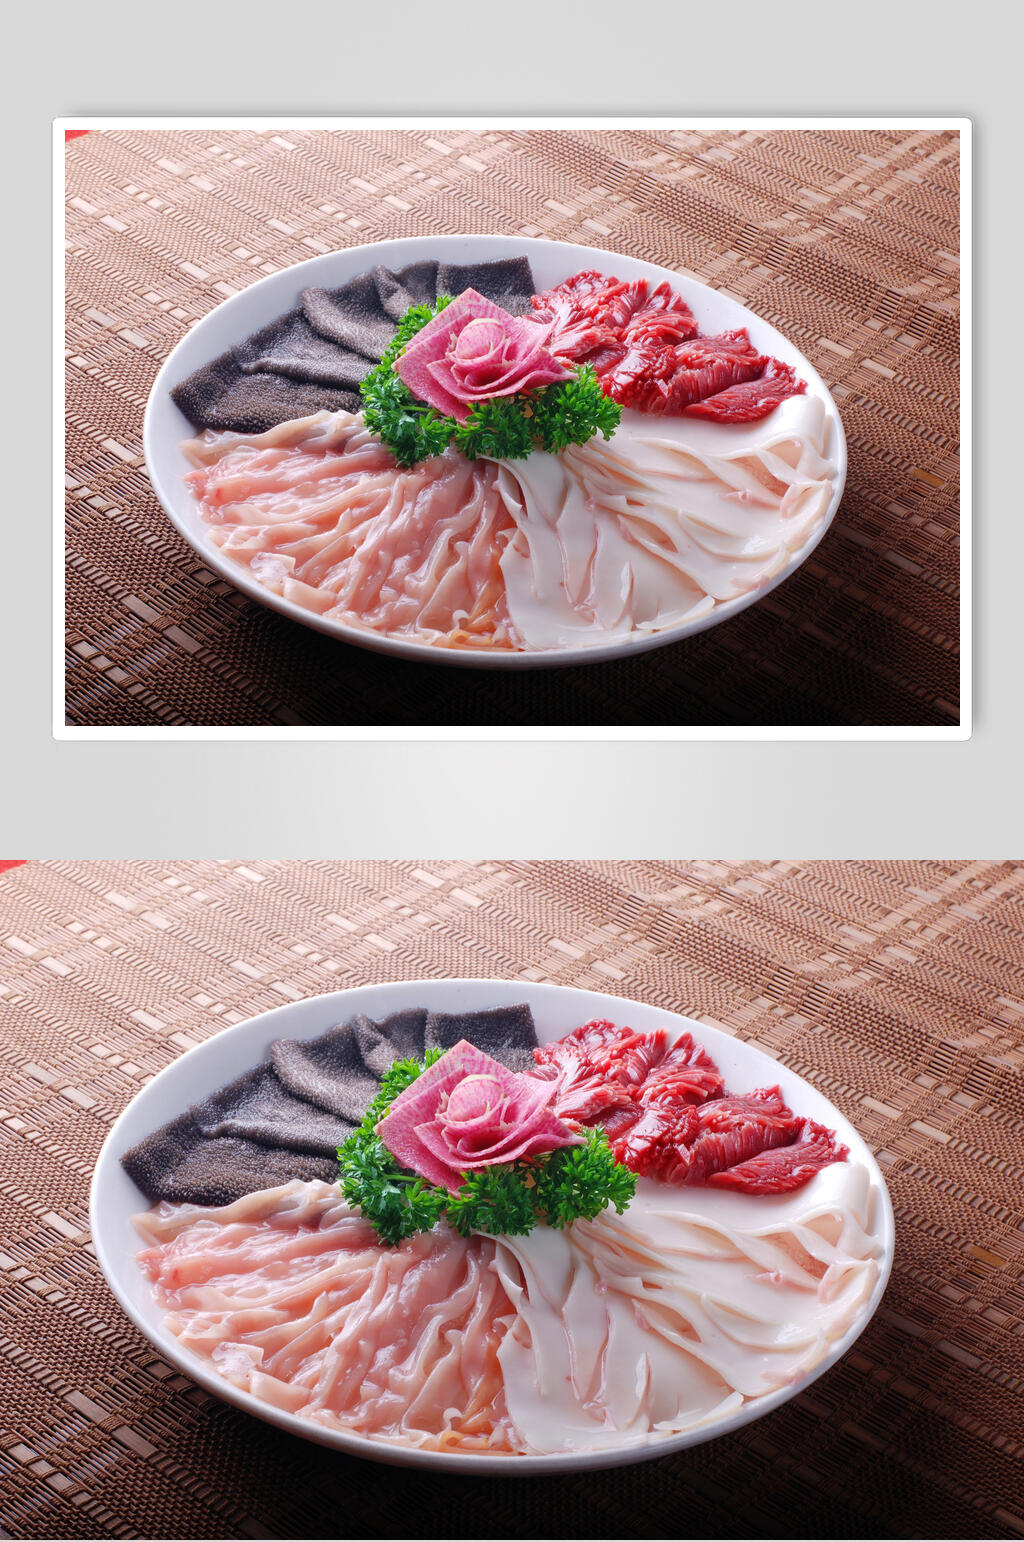 火锅荤菜摆盘图片欣赏图片